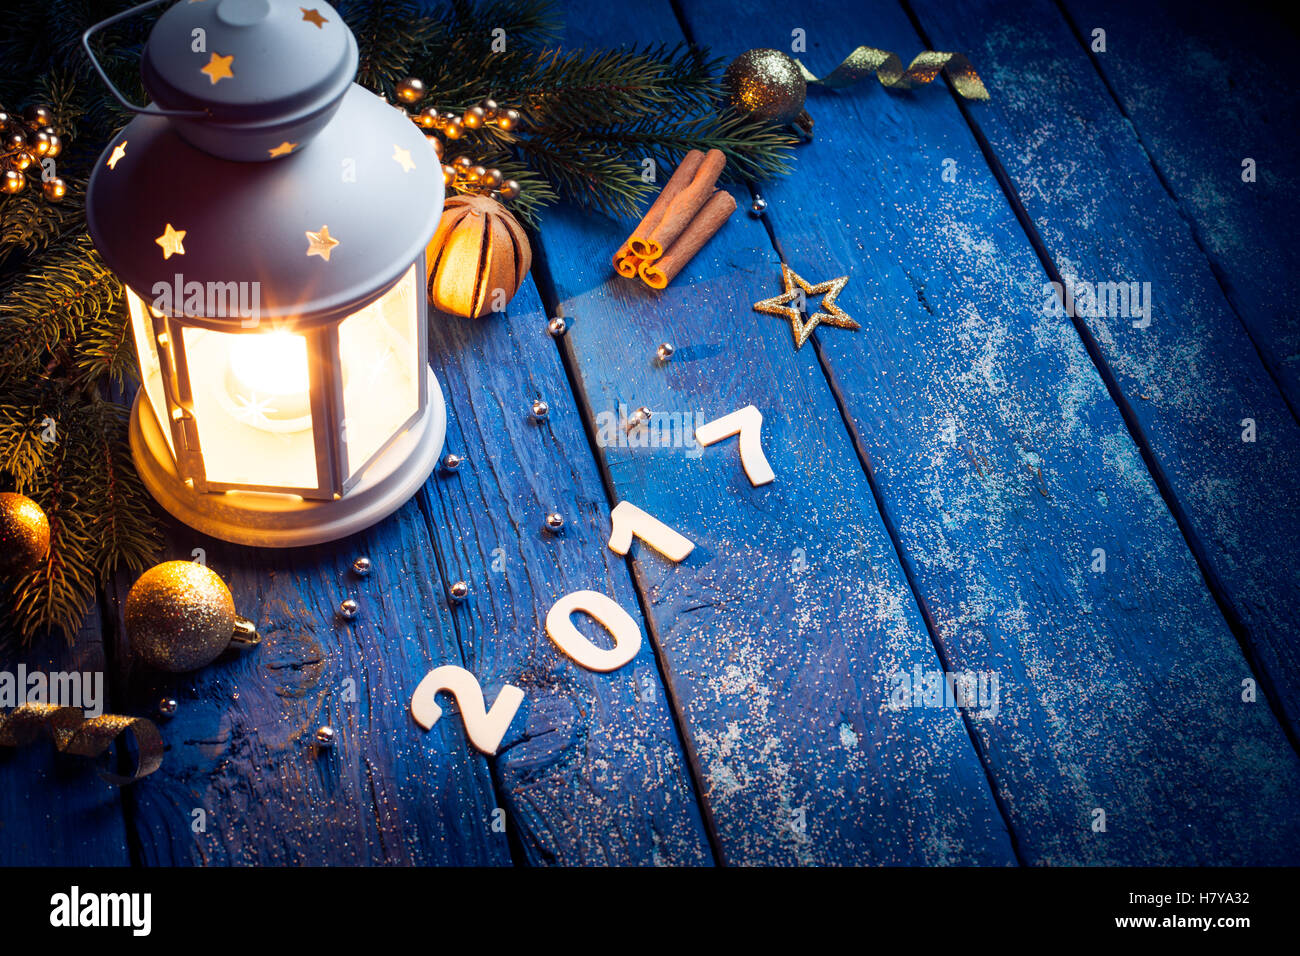 Lanterne magique sur fond de bois avec décoration de Noël Banque D'Images